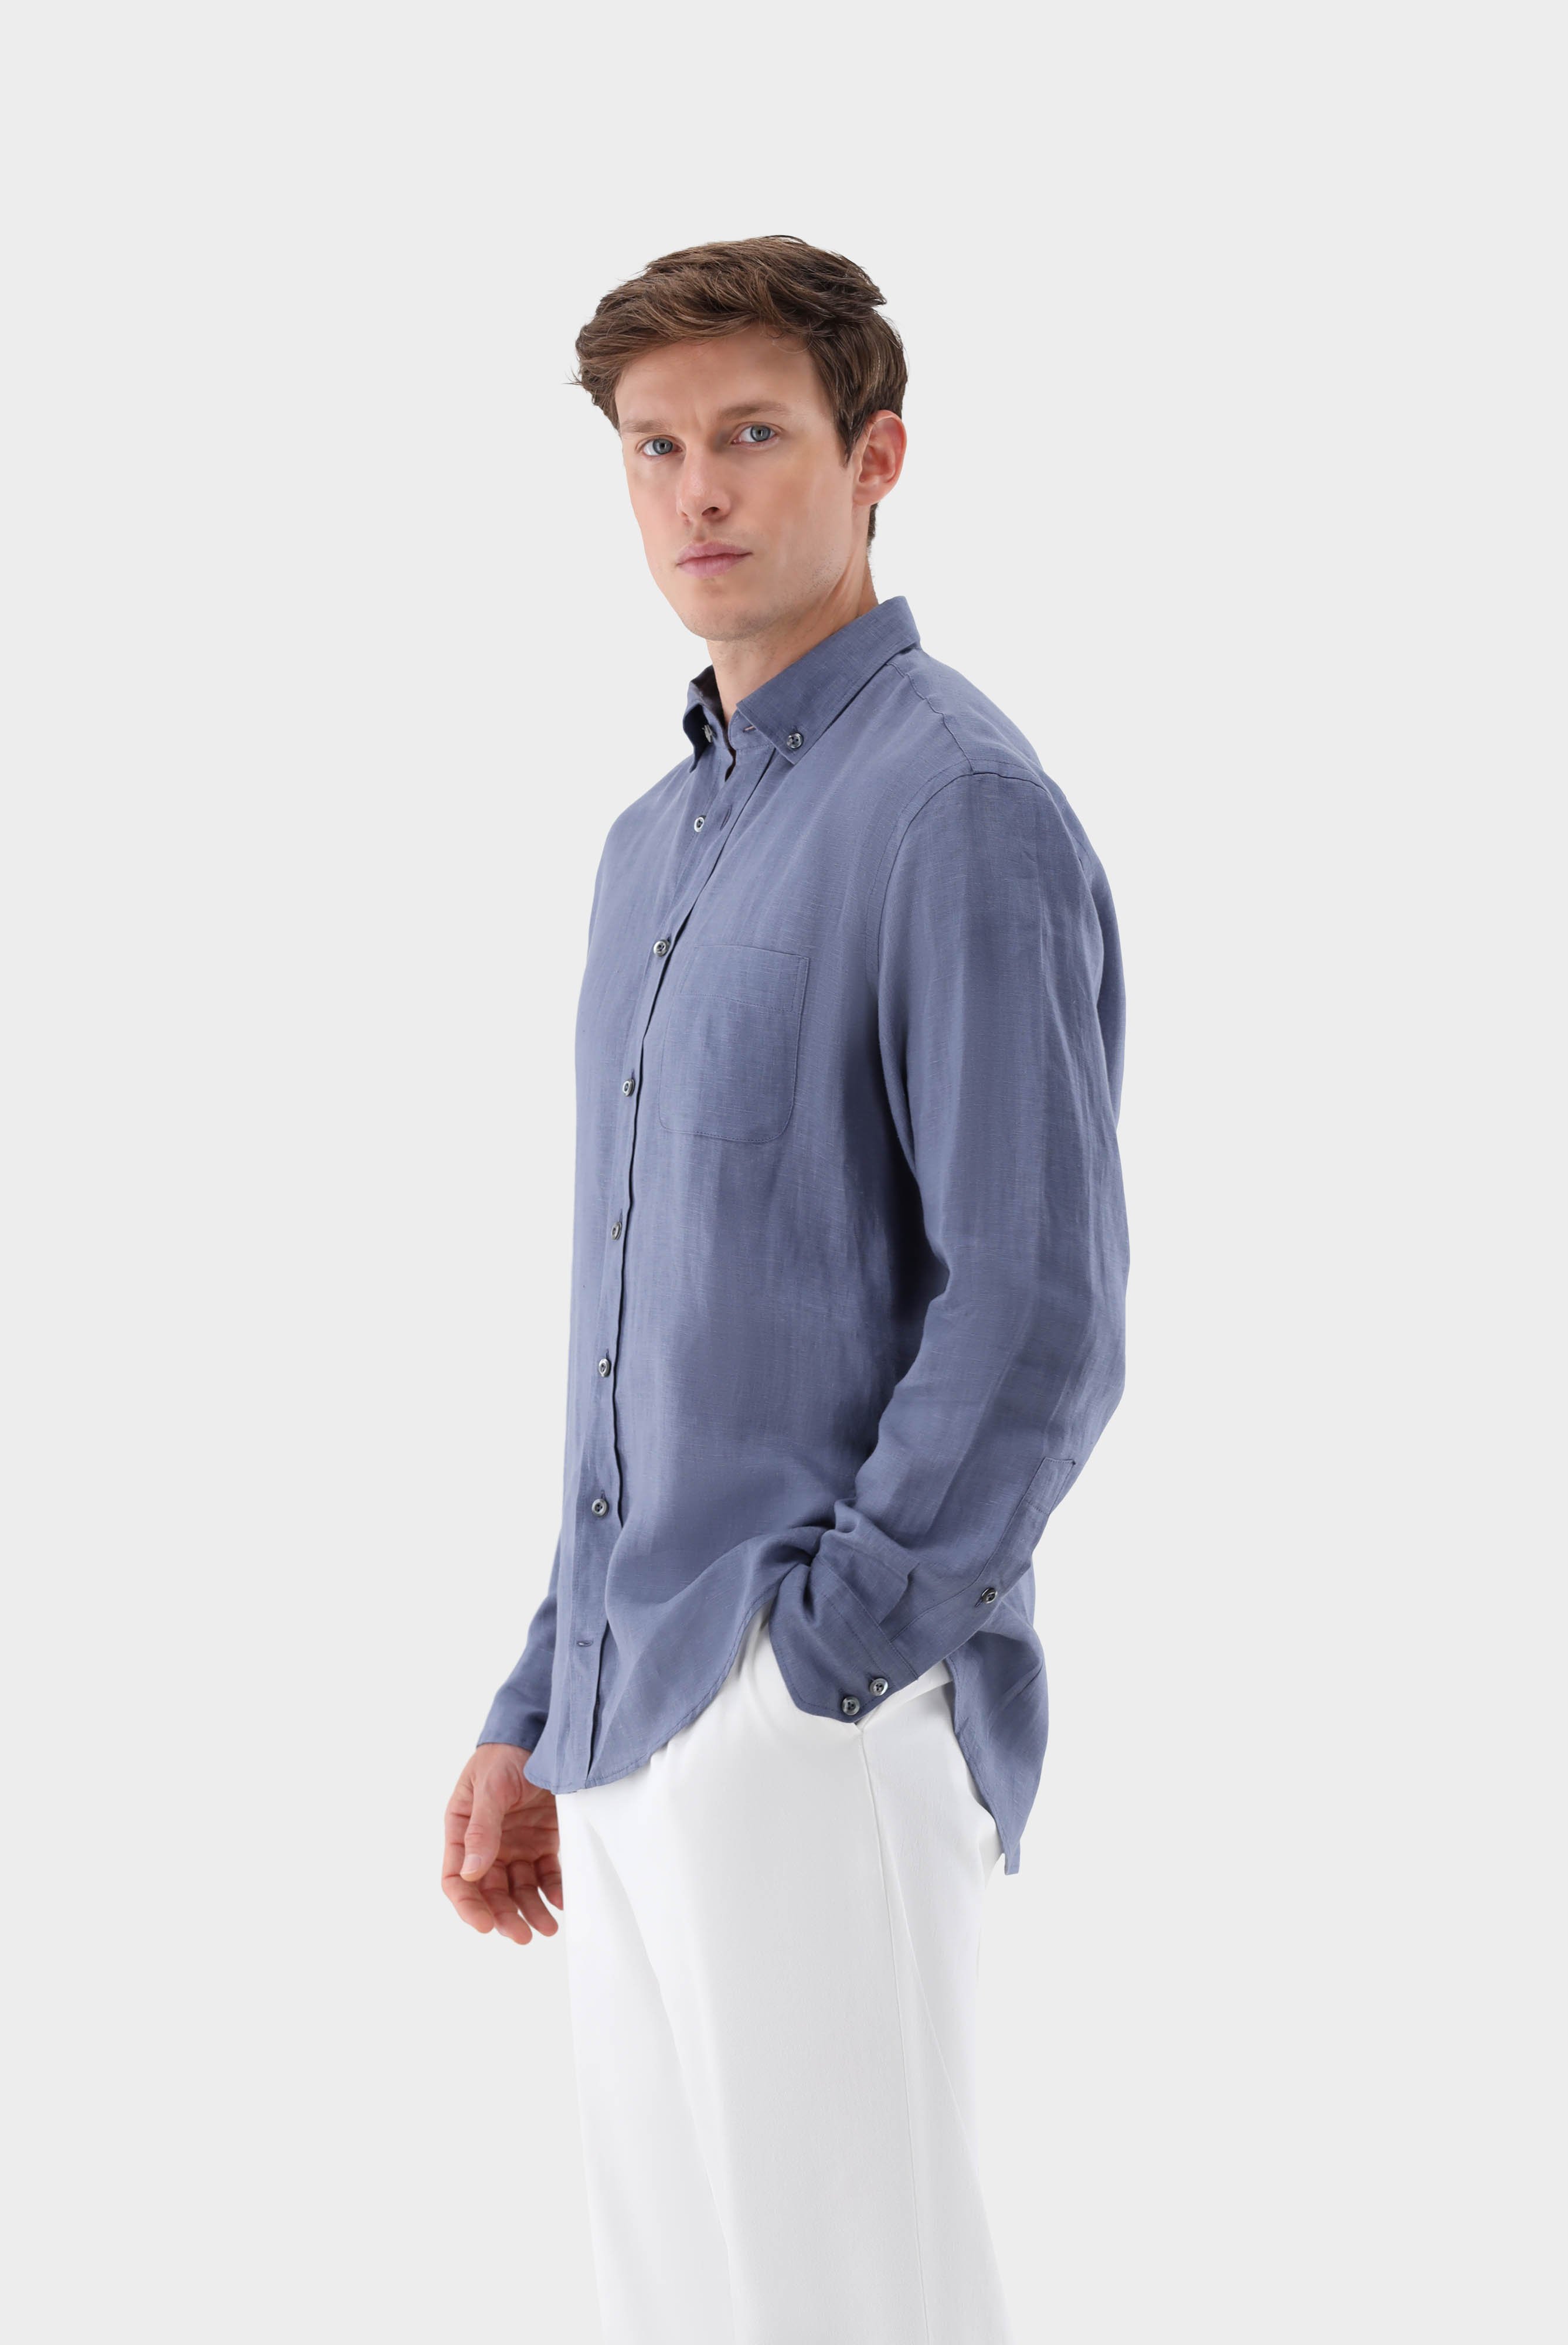 Casual Hemden+Leinenhemd mit Button-Down Kragen Tailor Fit+20.2013.9V.150555.680.38